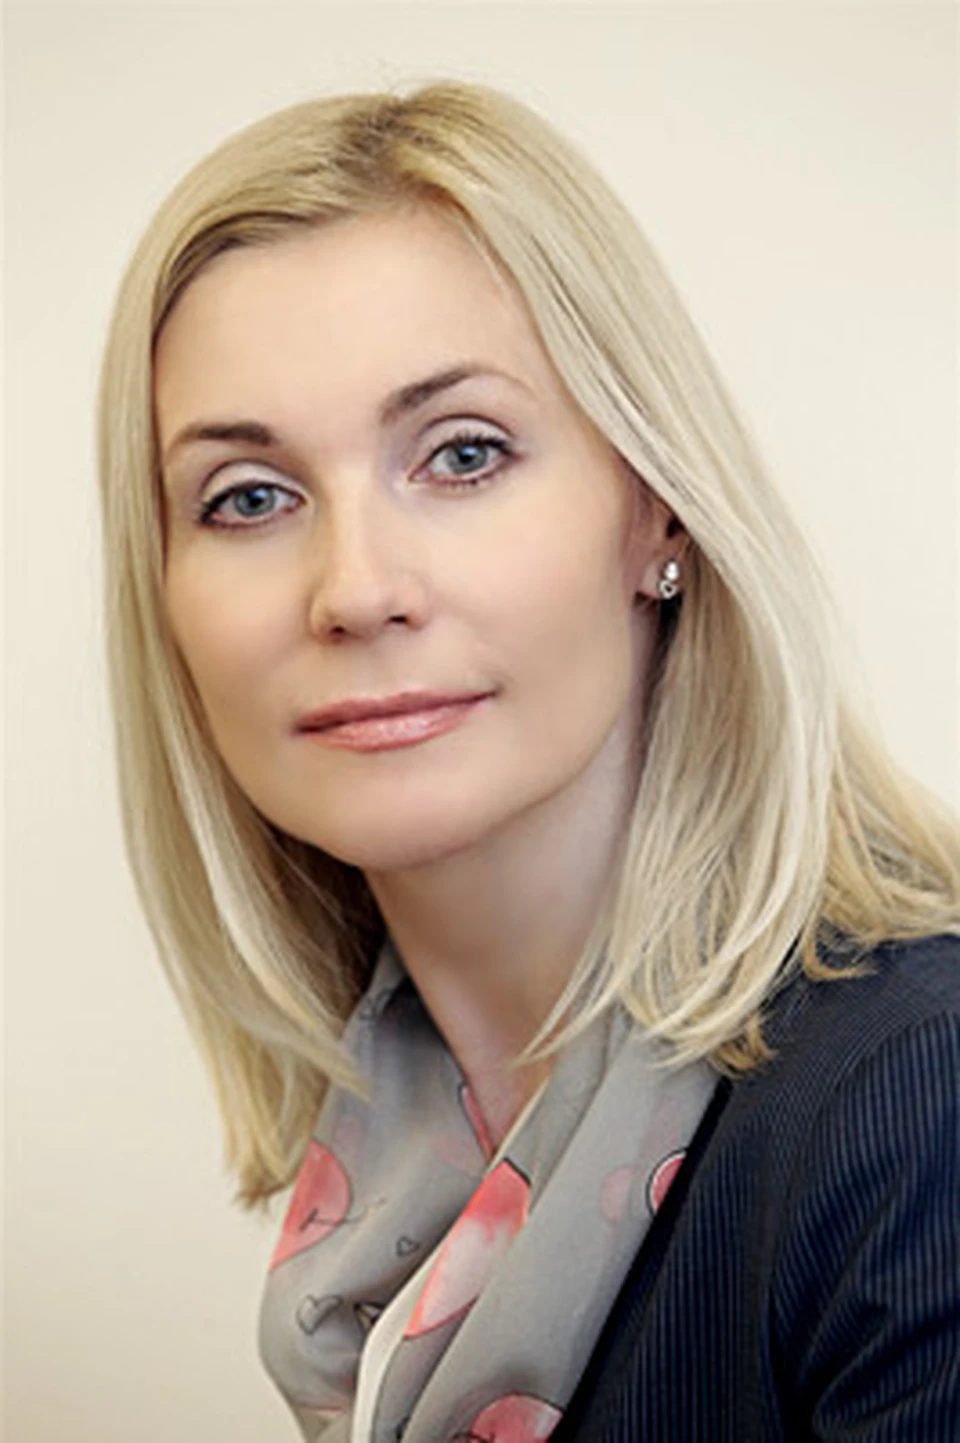 Директор департамента депозитов и комиссионных продуктов банка "Ренессанс-Кредит" Галина Уткина.